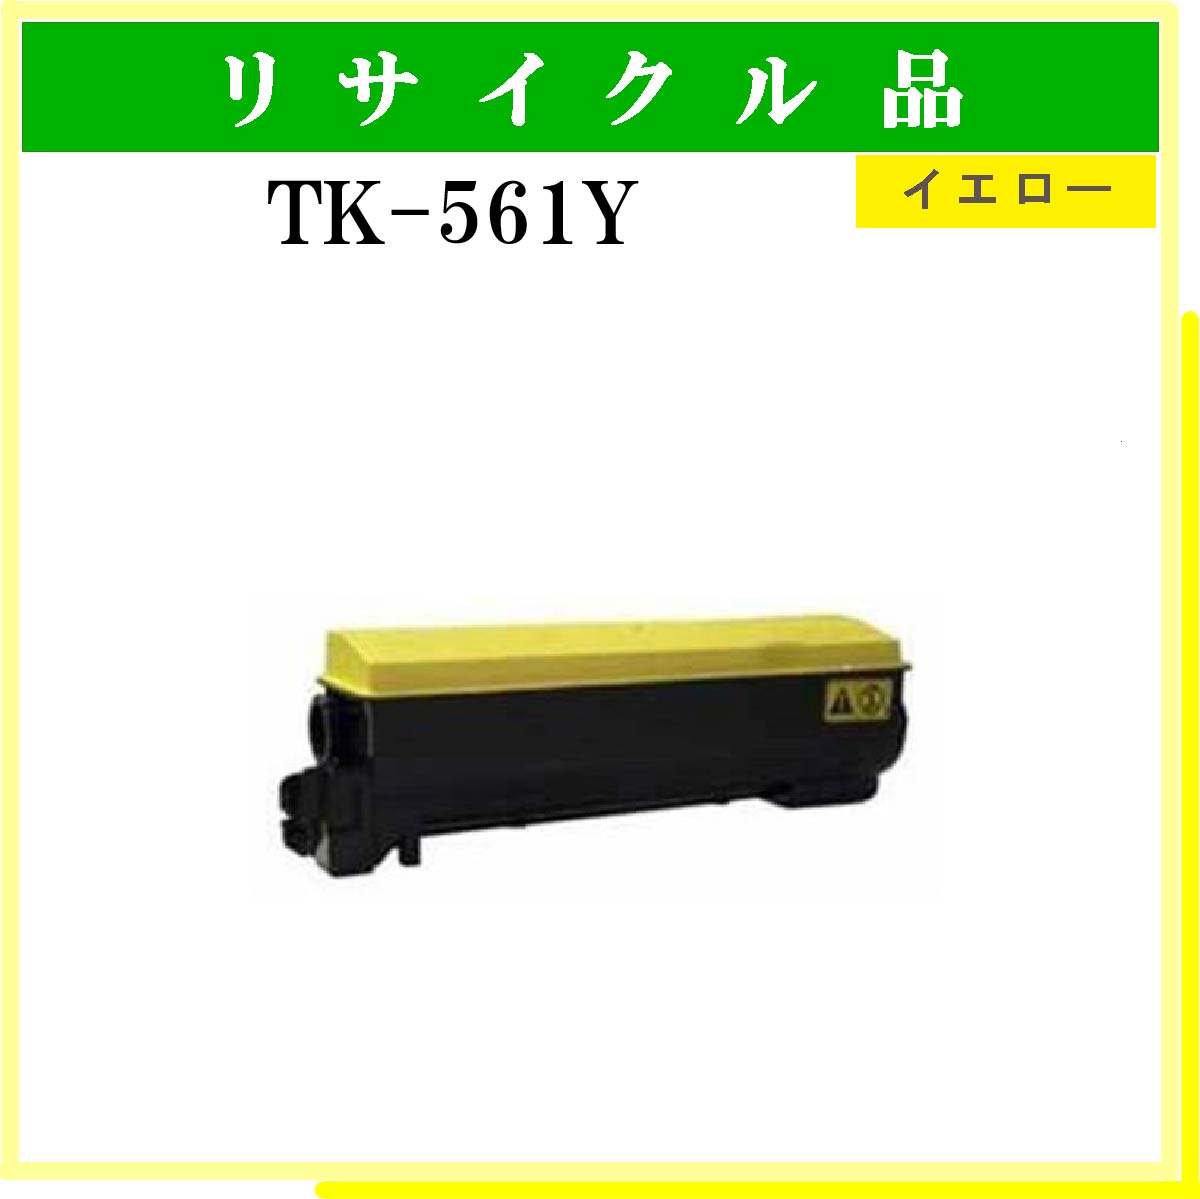 TK-561Y